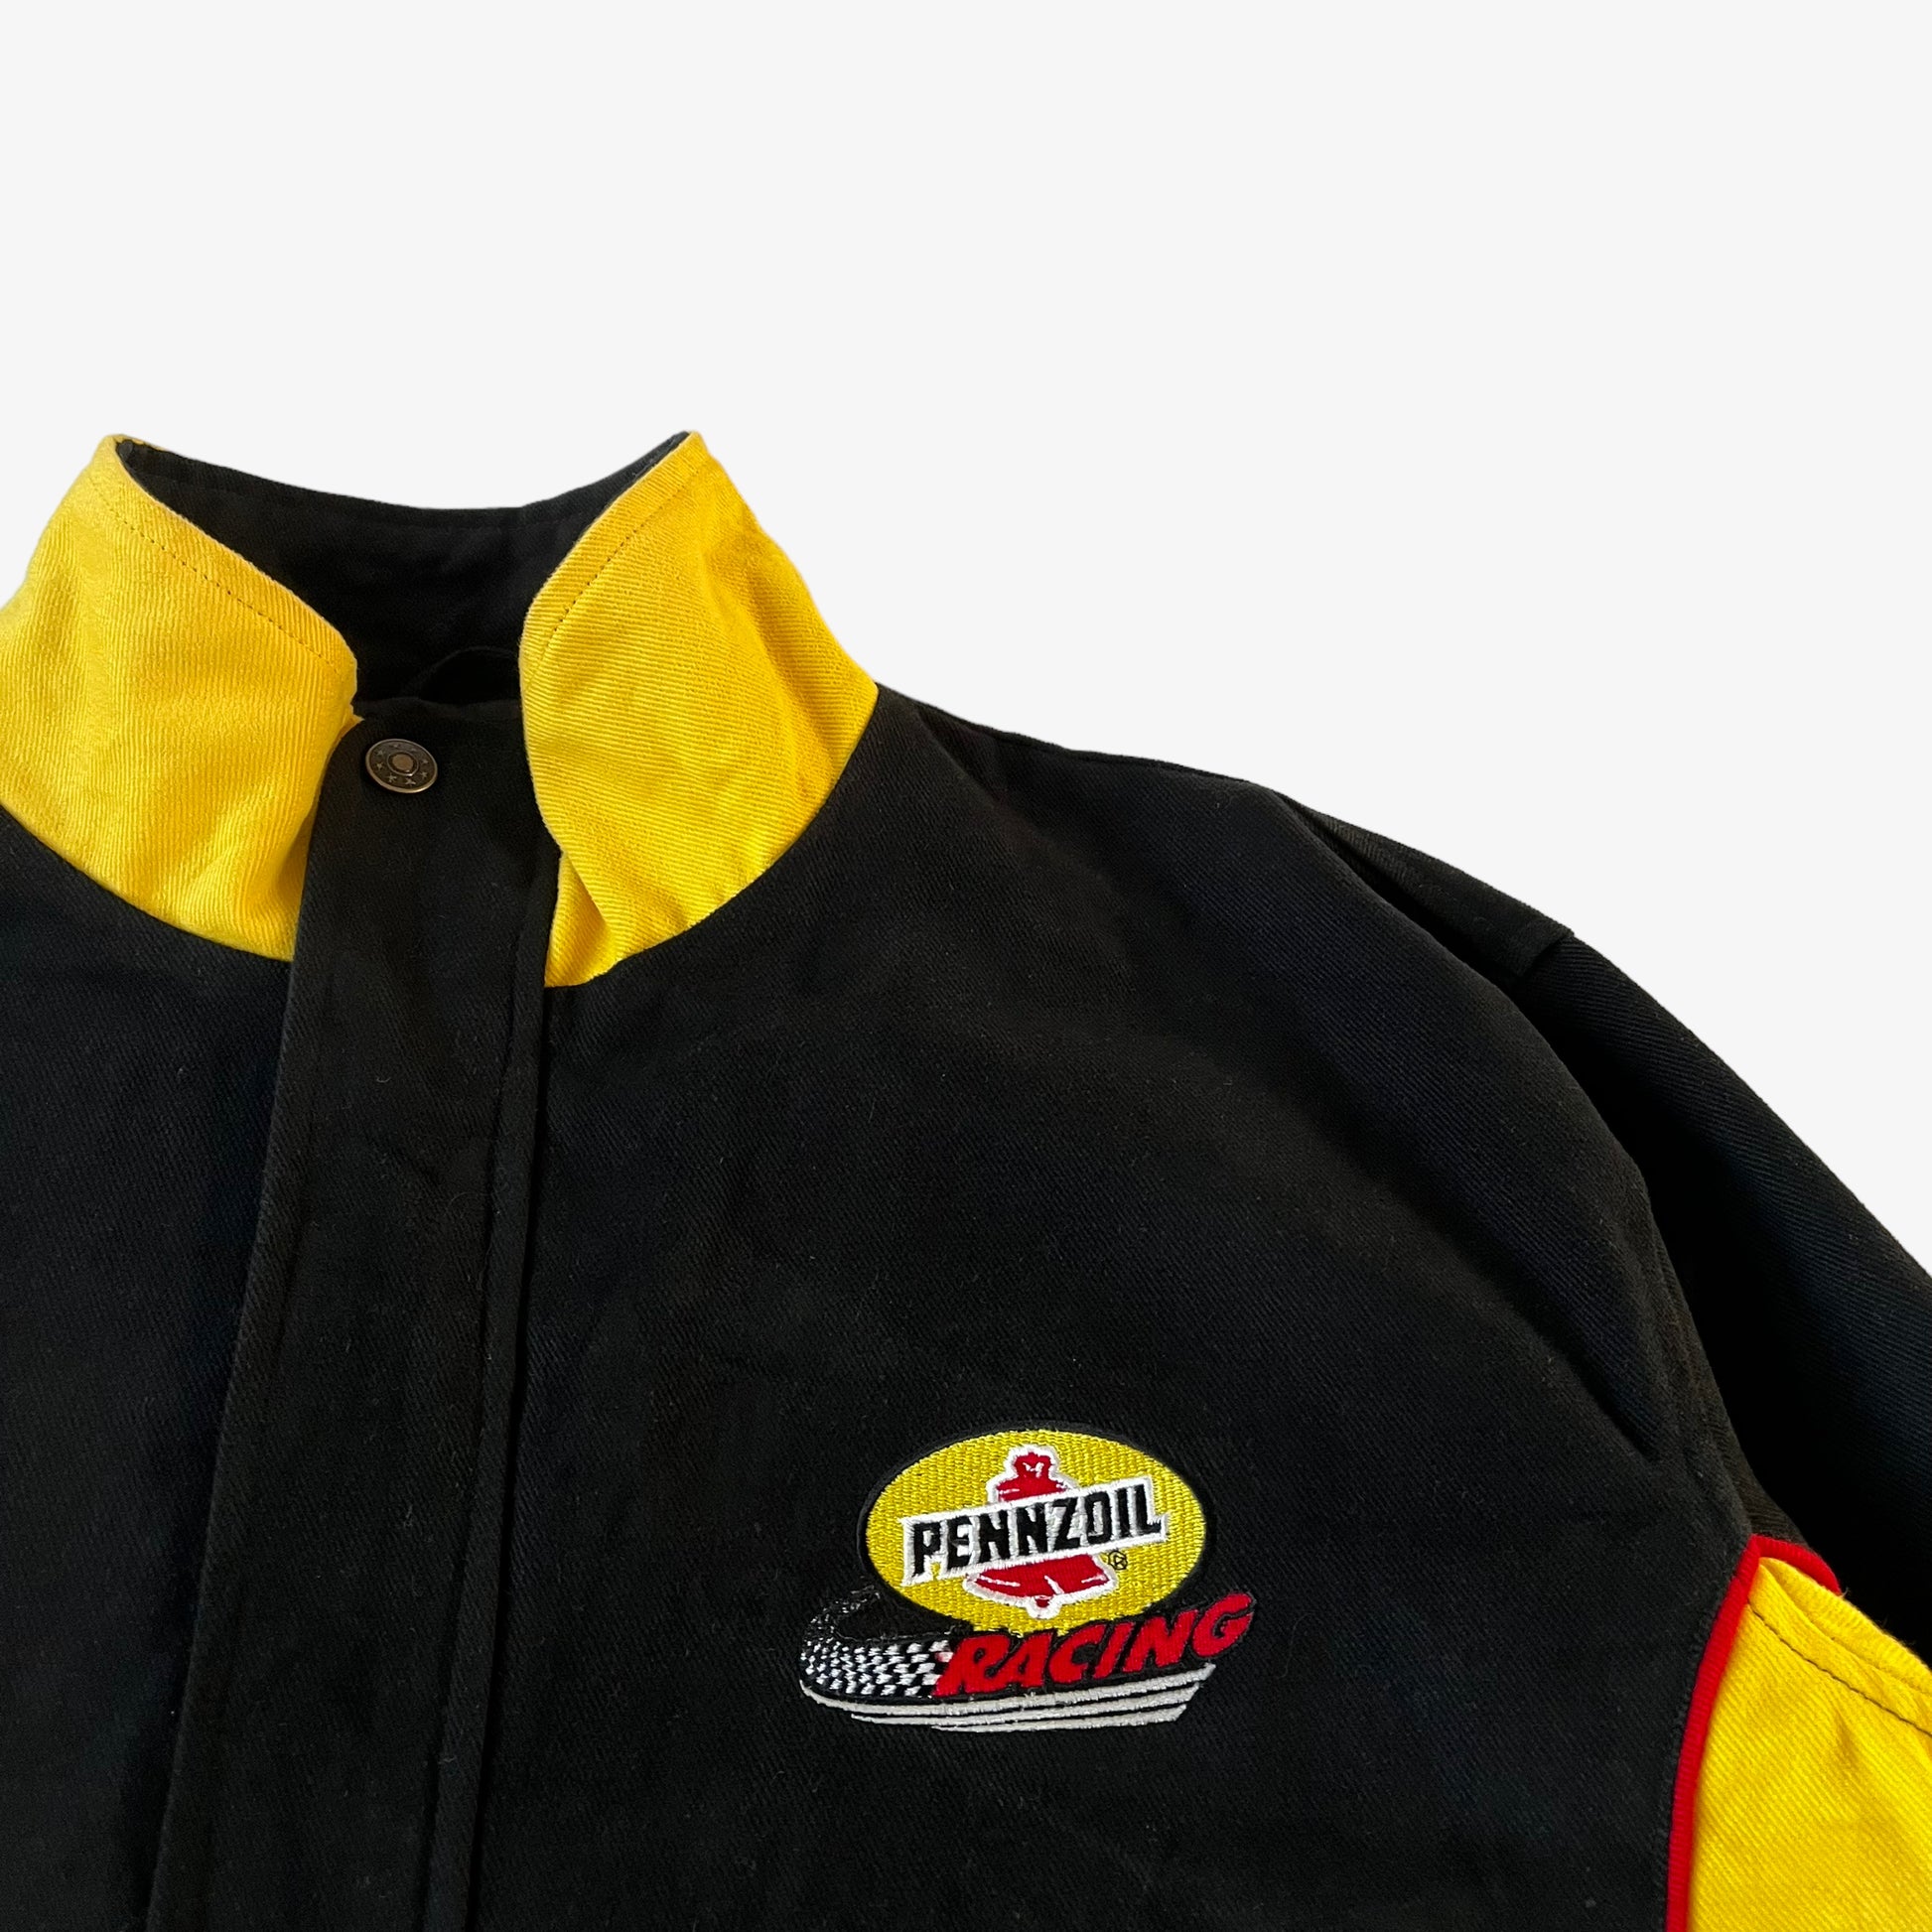 Vintage 90s Pennzoil Racing Team Nascar Jacket Badge - Casspios Dream